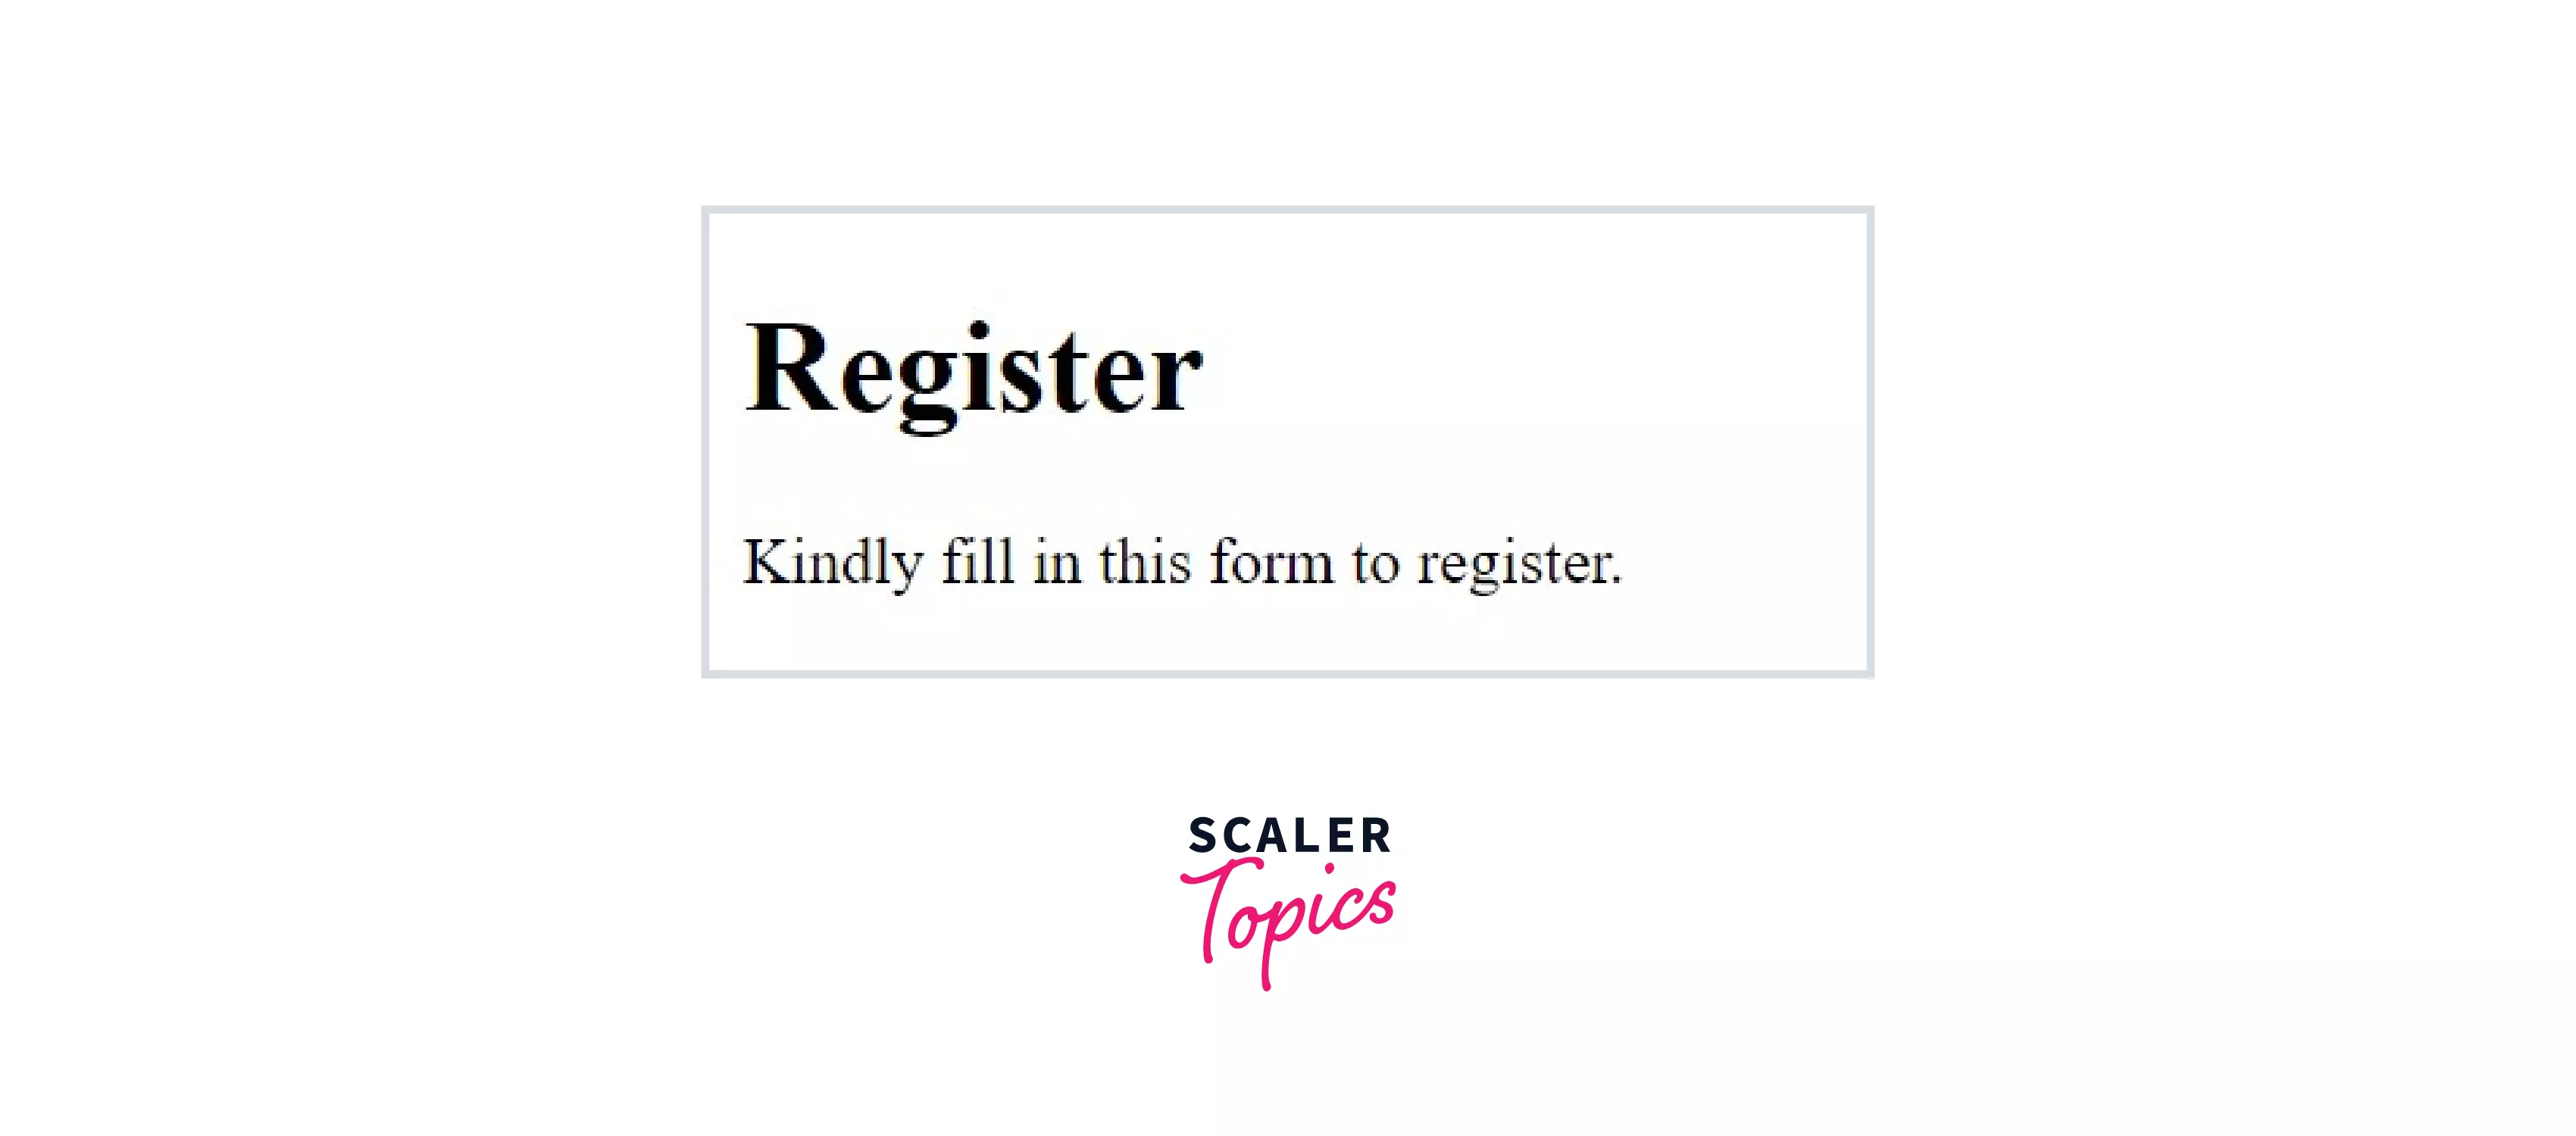 HTML Registration form